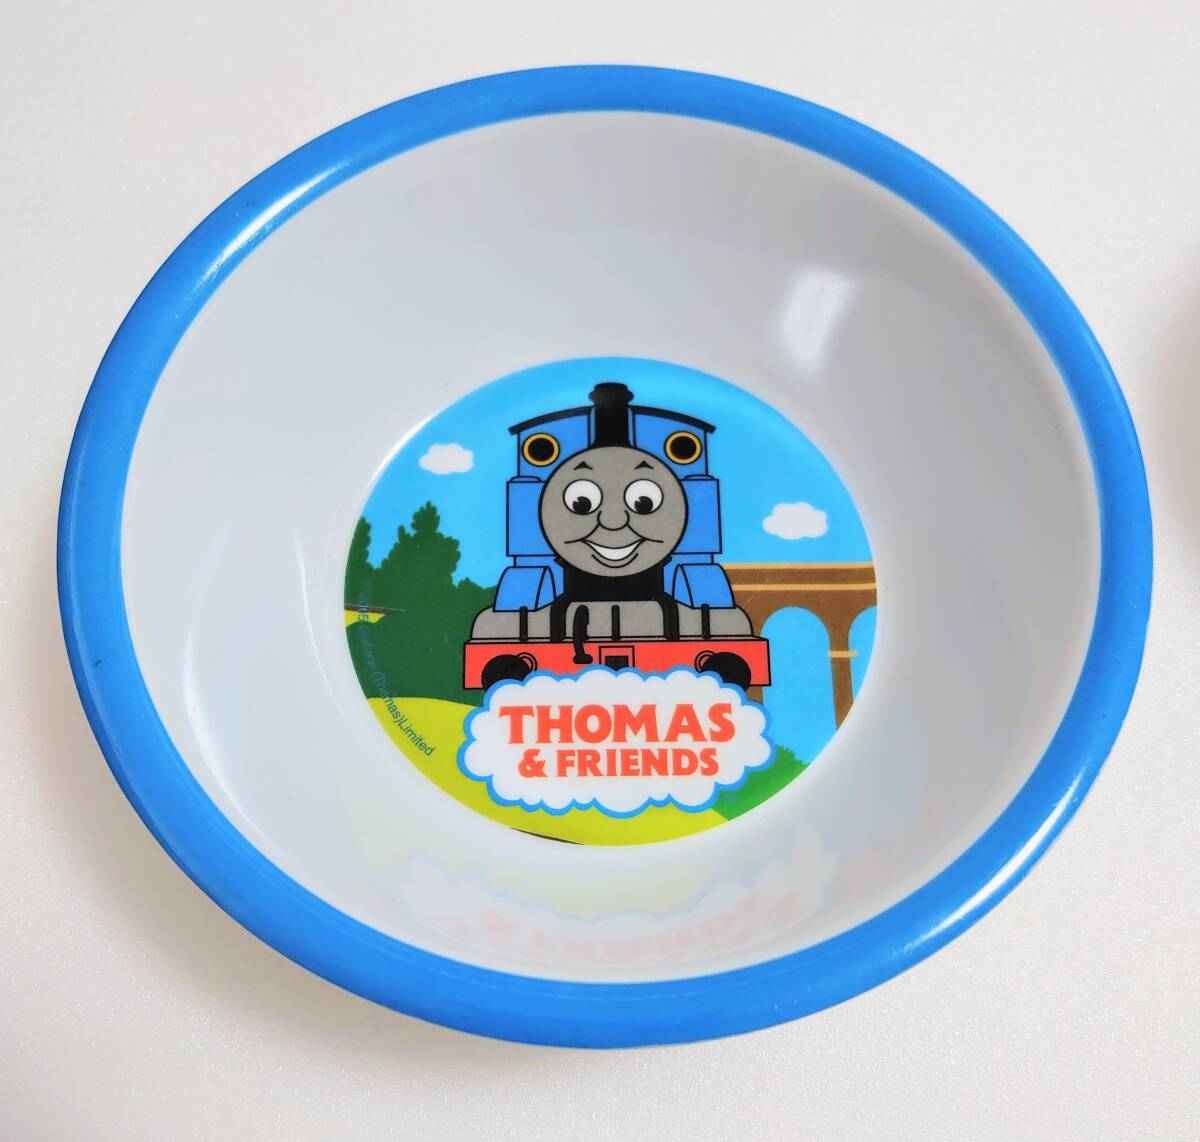  не использовался * локомотив Thomas melamin посуда 3 позиций комплект * миска *.....* ложка * вилка 